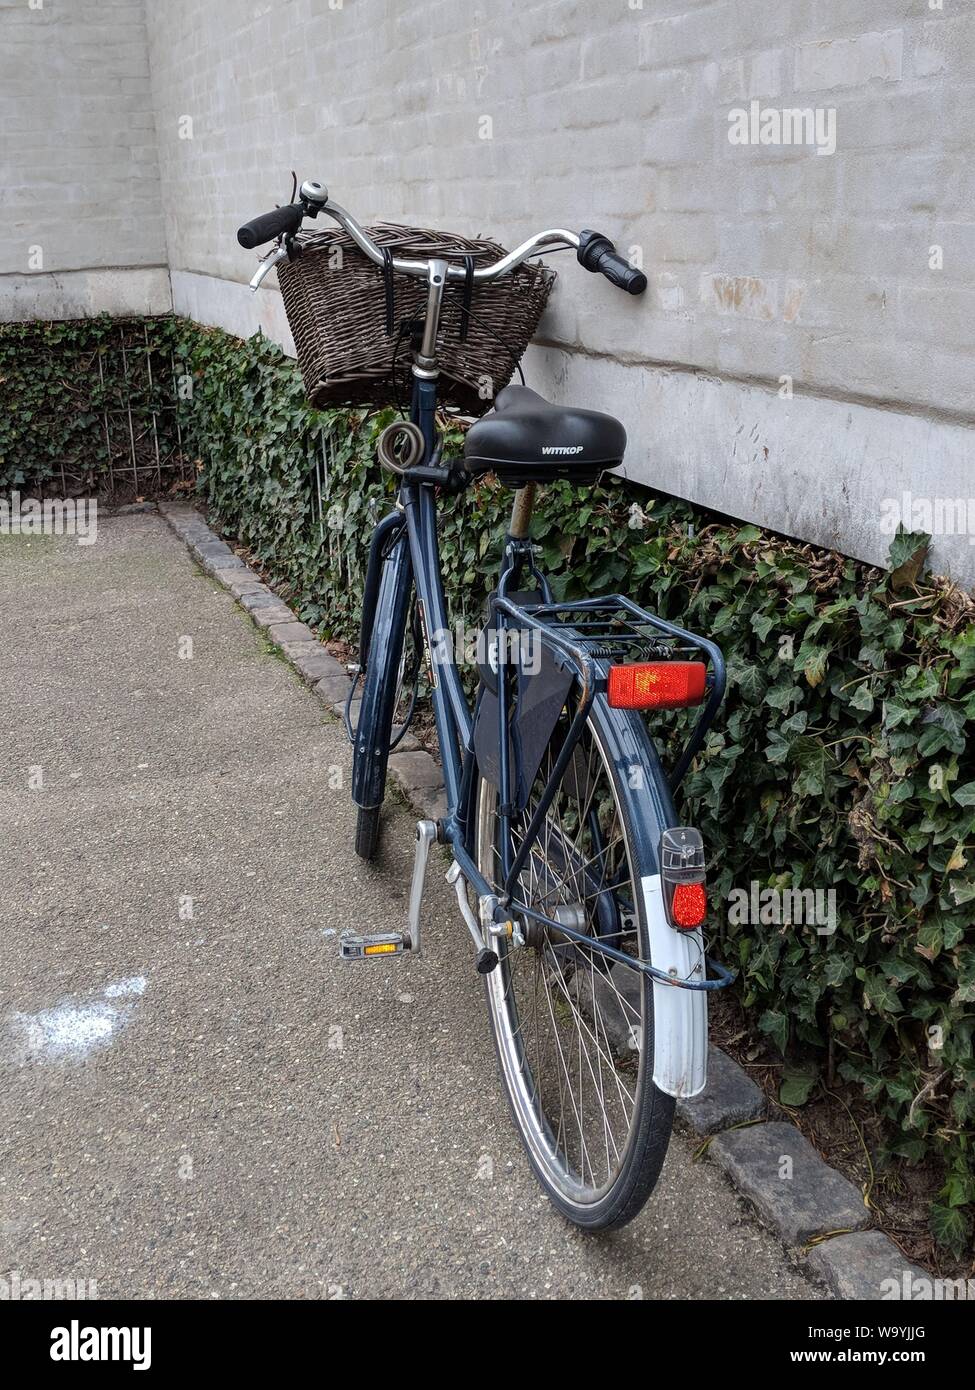 Colpo verticale di una bicicletta nera con cesto marrone parcheggiato vicino ad un muro con piante Foto Stock